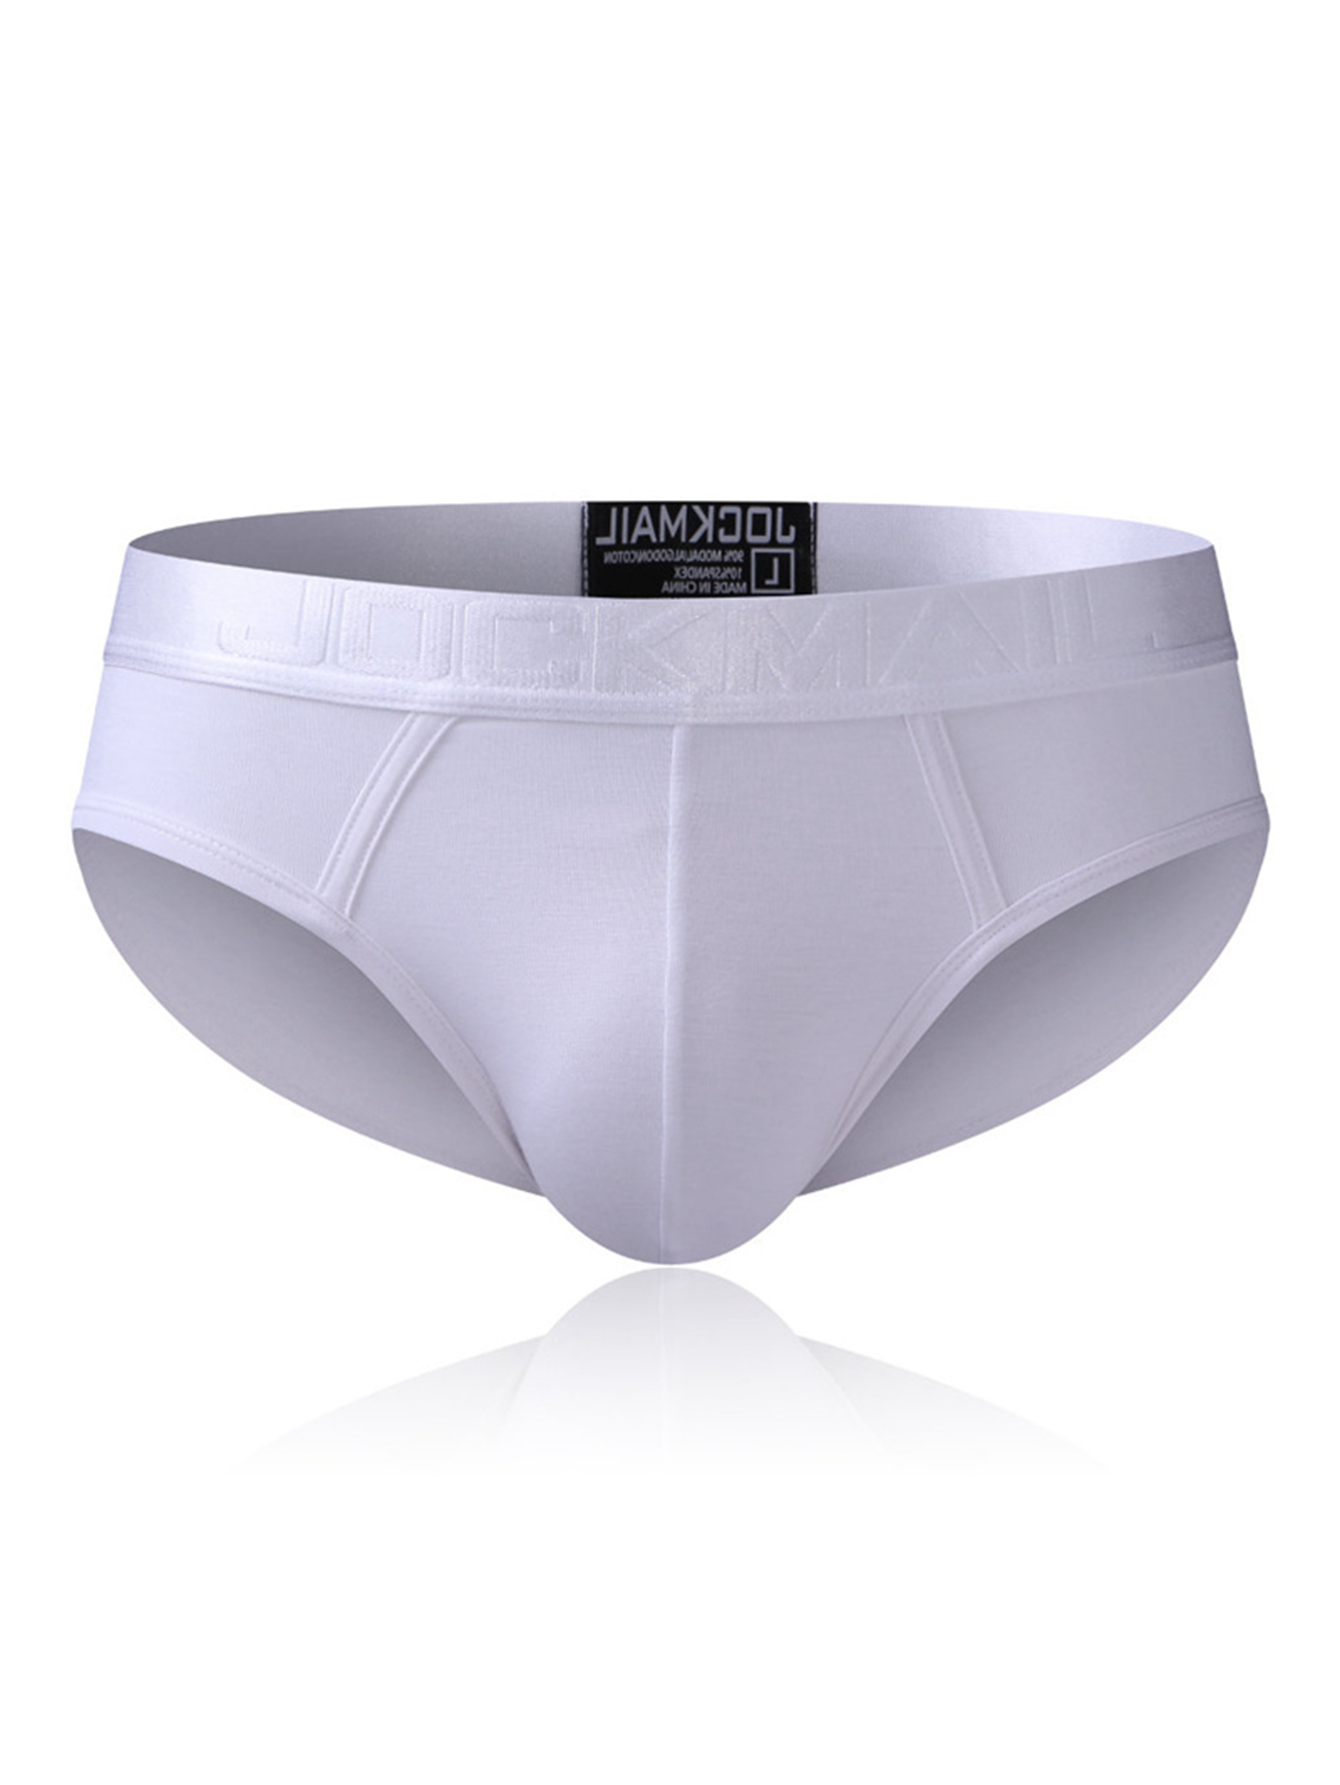 Jockmail Sexy Men's Cotton Underwear High Cut Sport Pouch Briefs